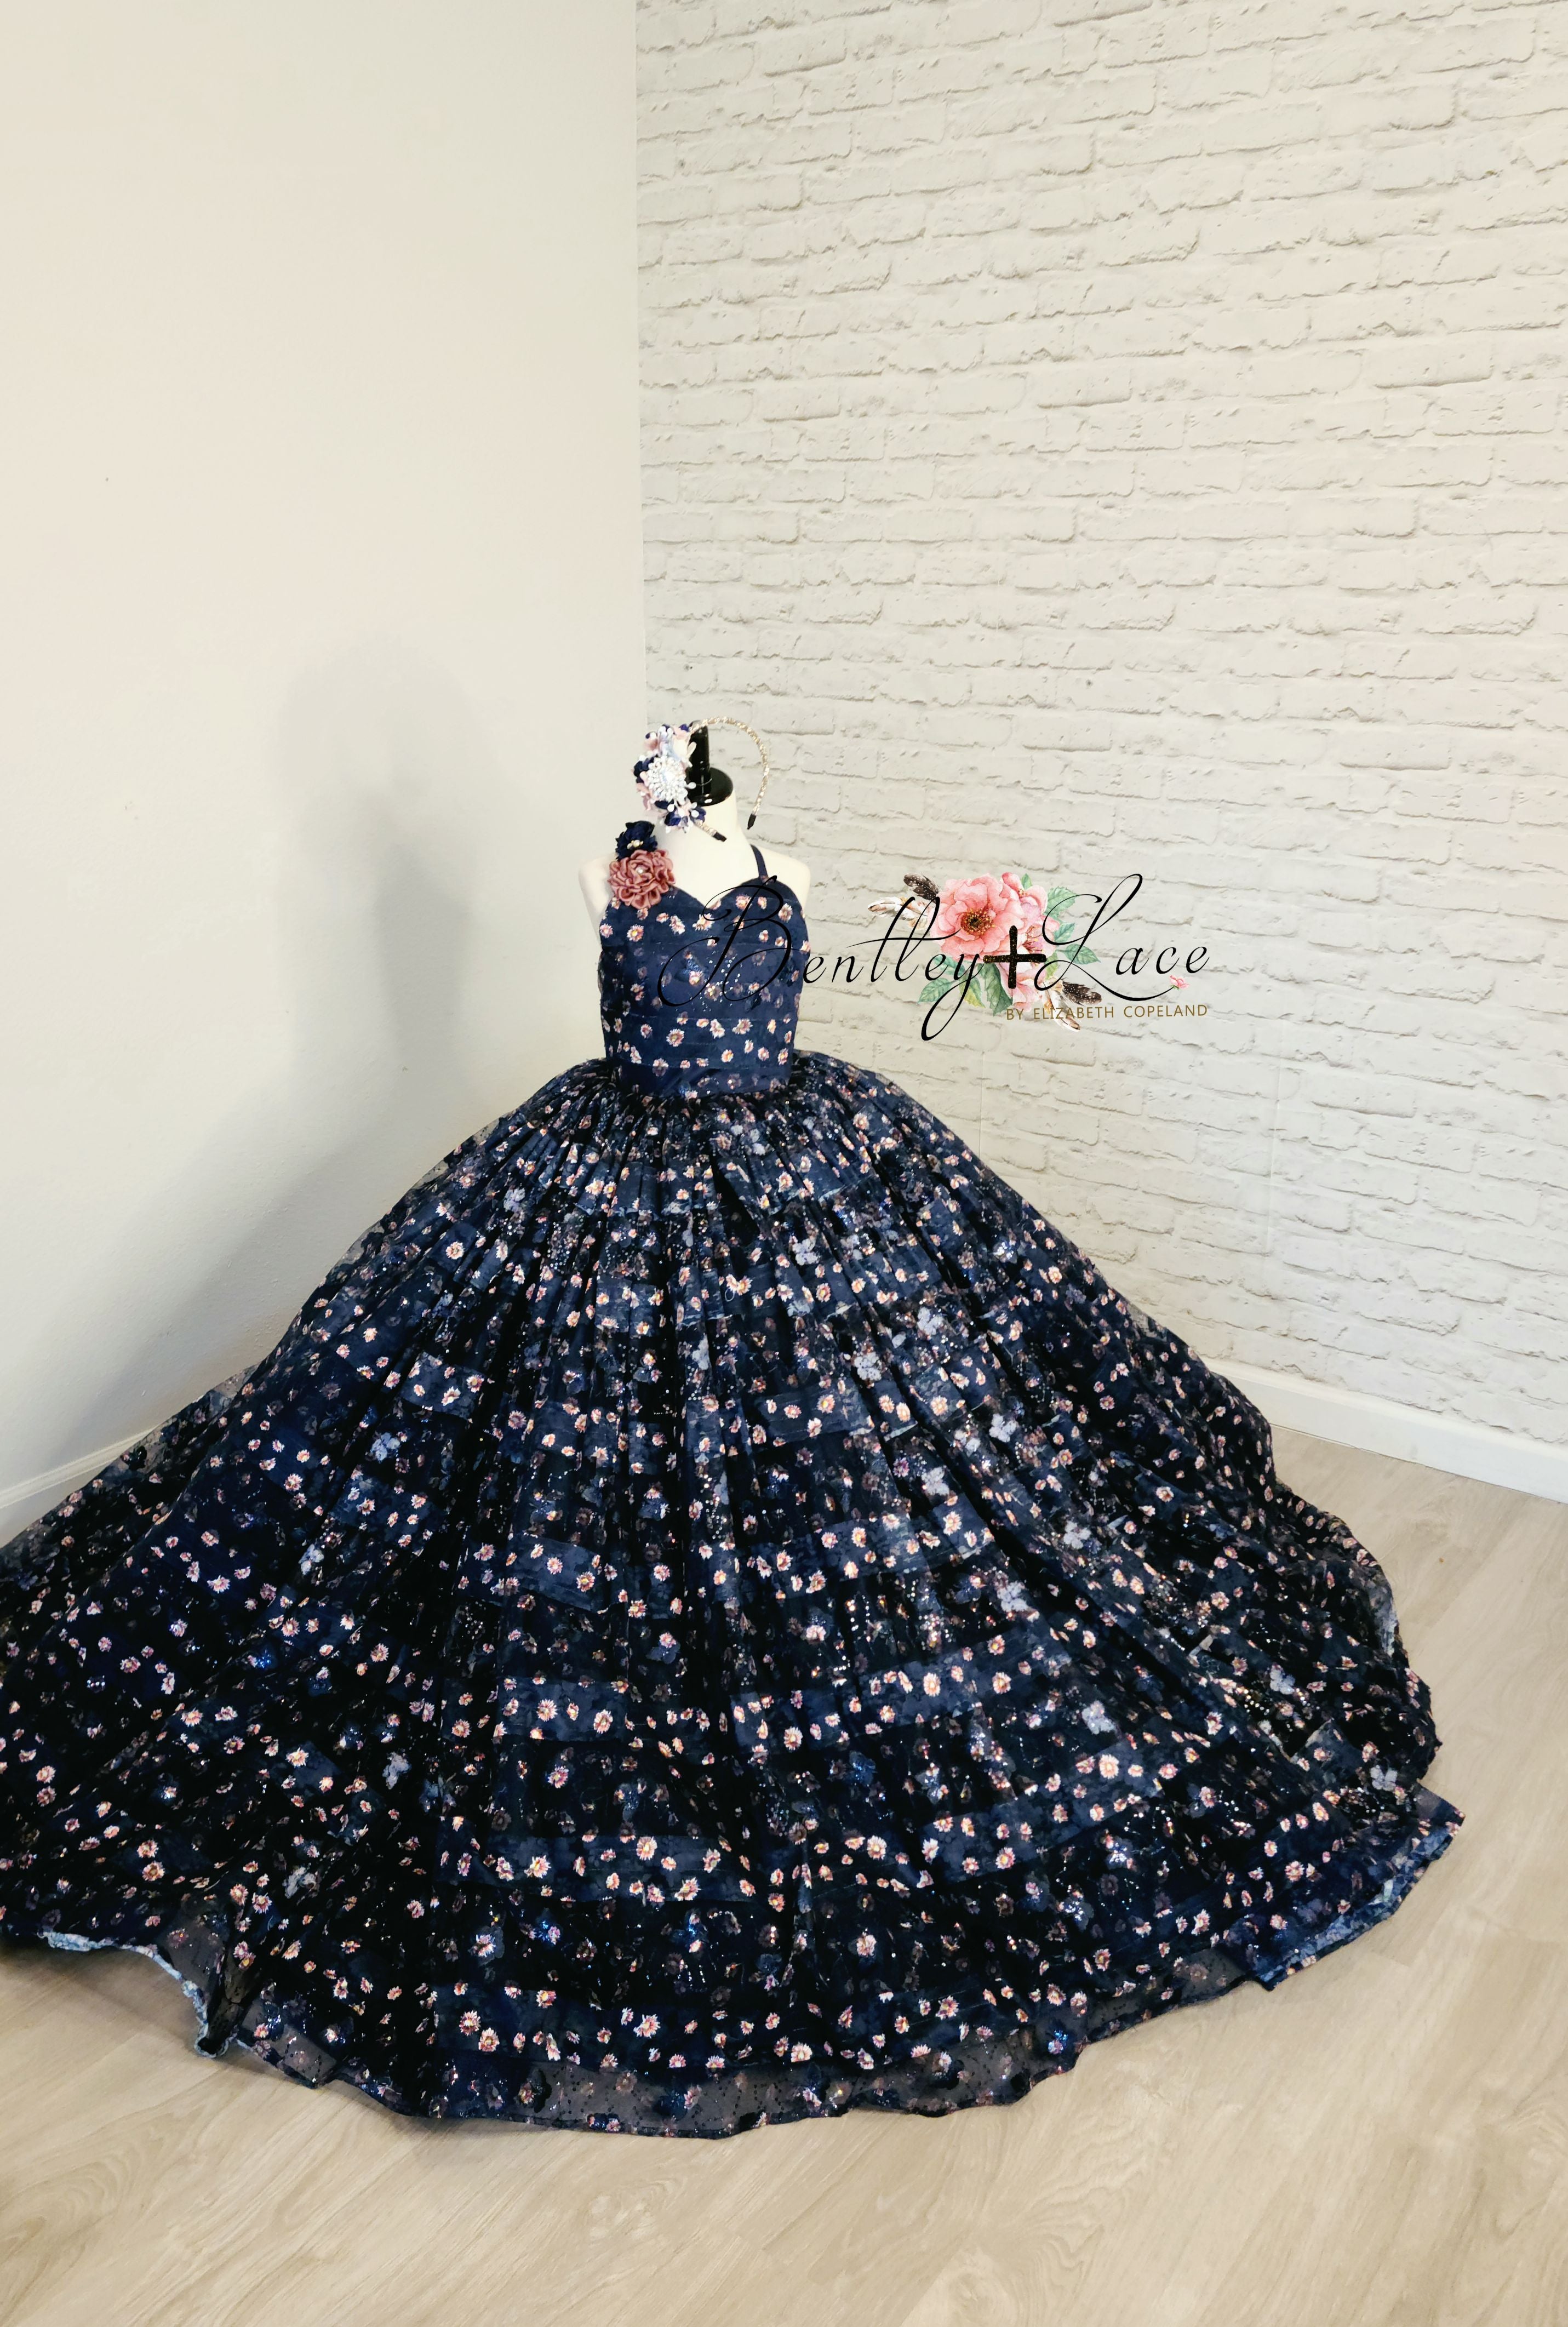 Buy chenshijiu Women Crochet Lace A line Wedding Maxi Chiffon Formal Night Gown  Dress Blue XL at Amazon.in